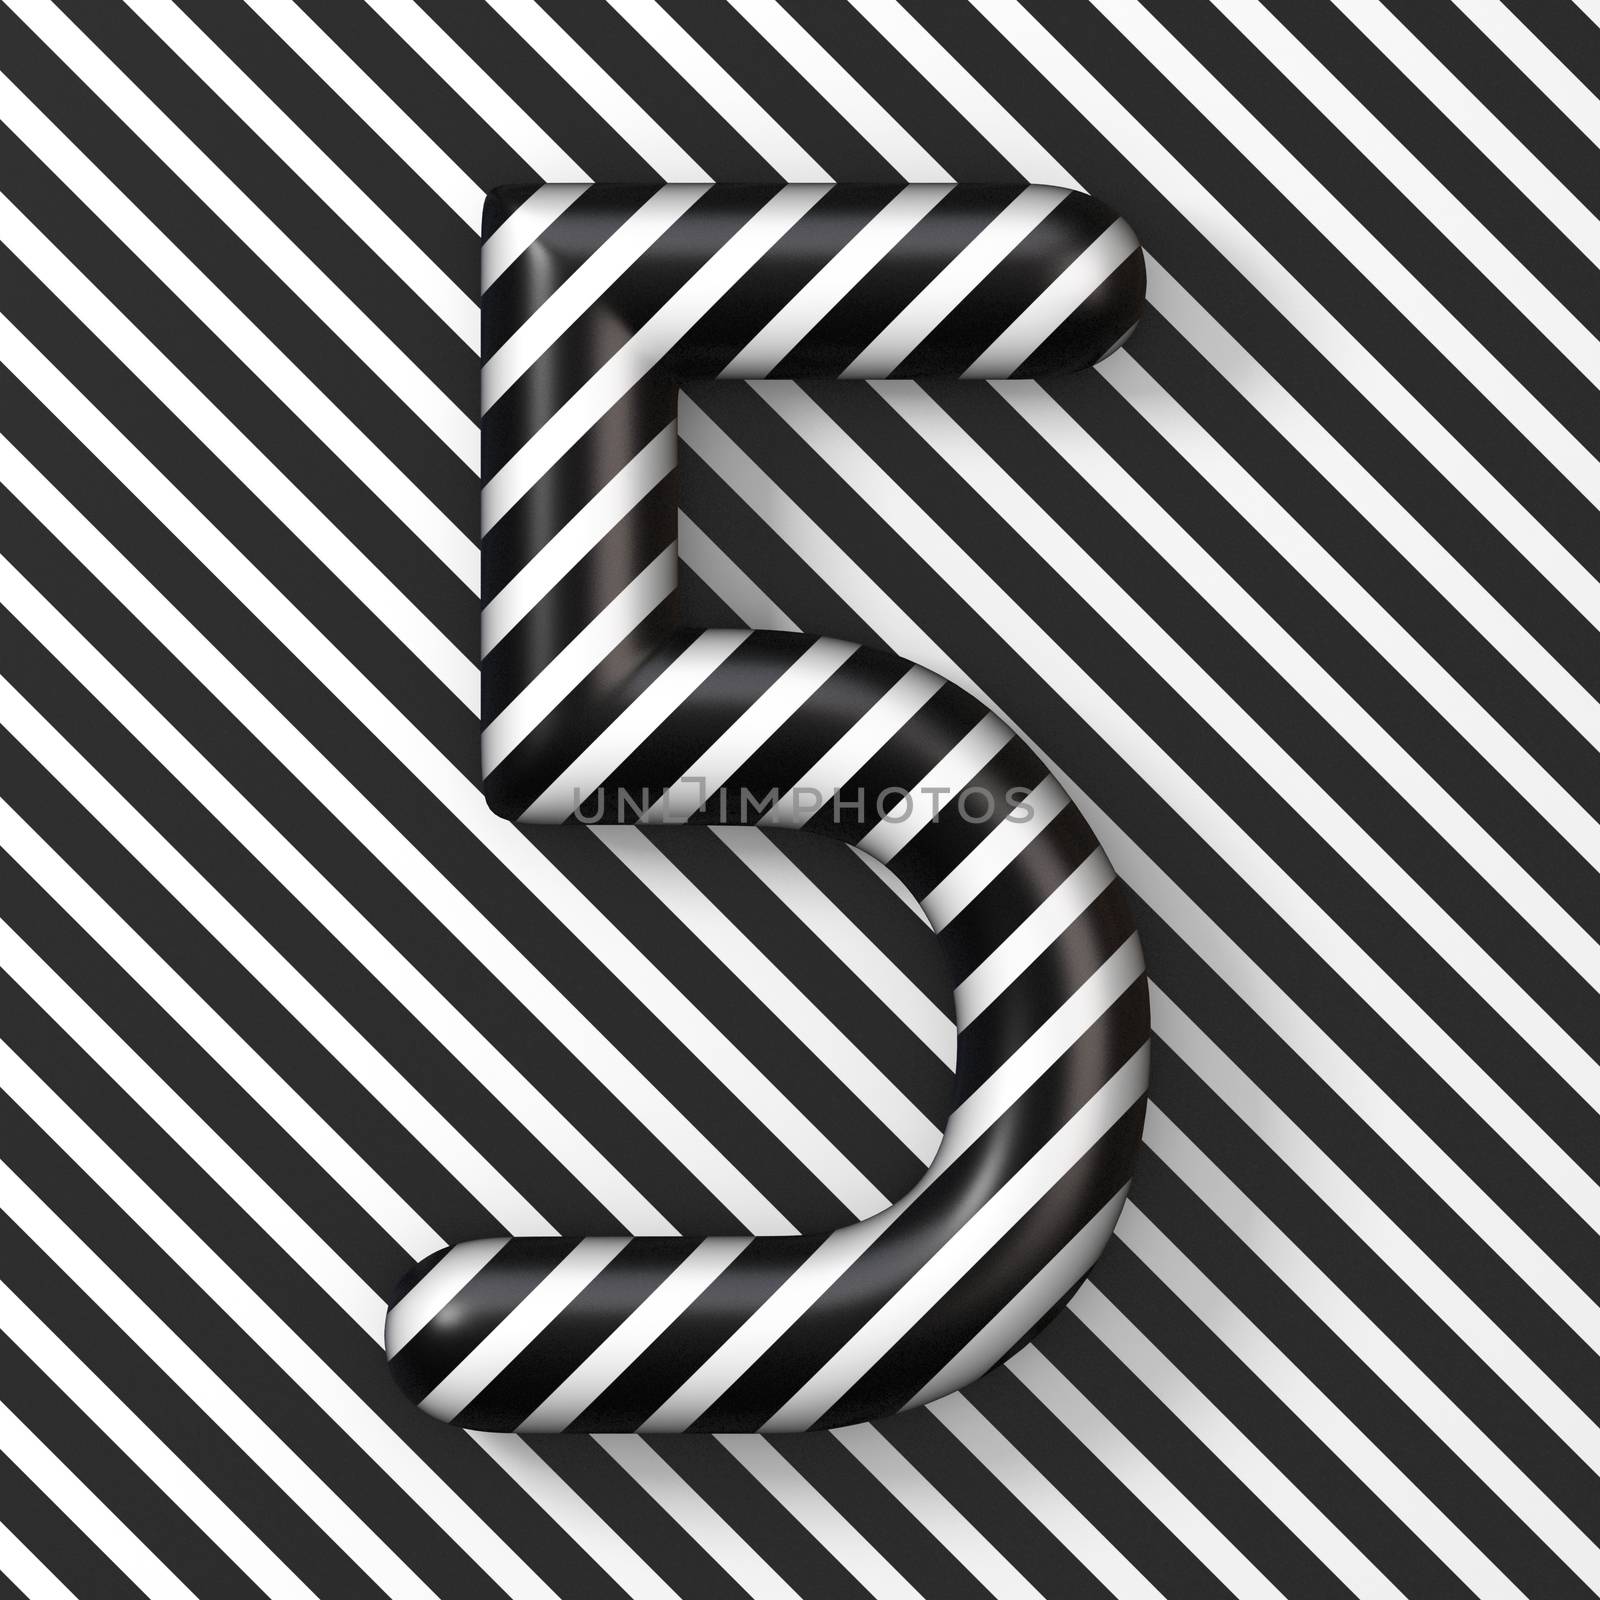 Black and white stripes Number 5 FIVE 3D render illustration